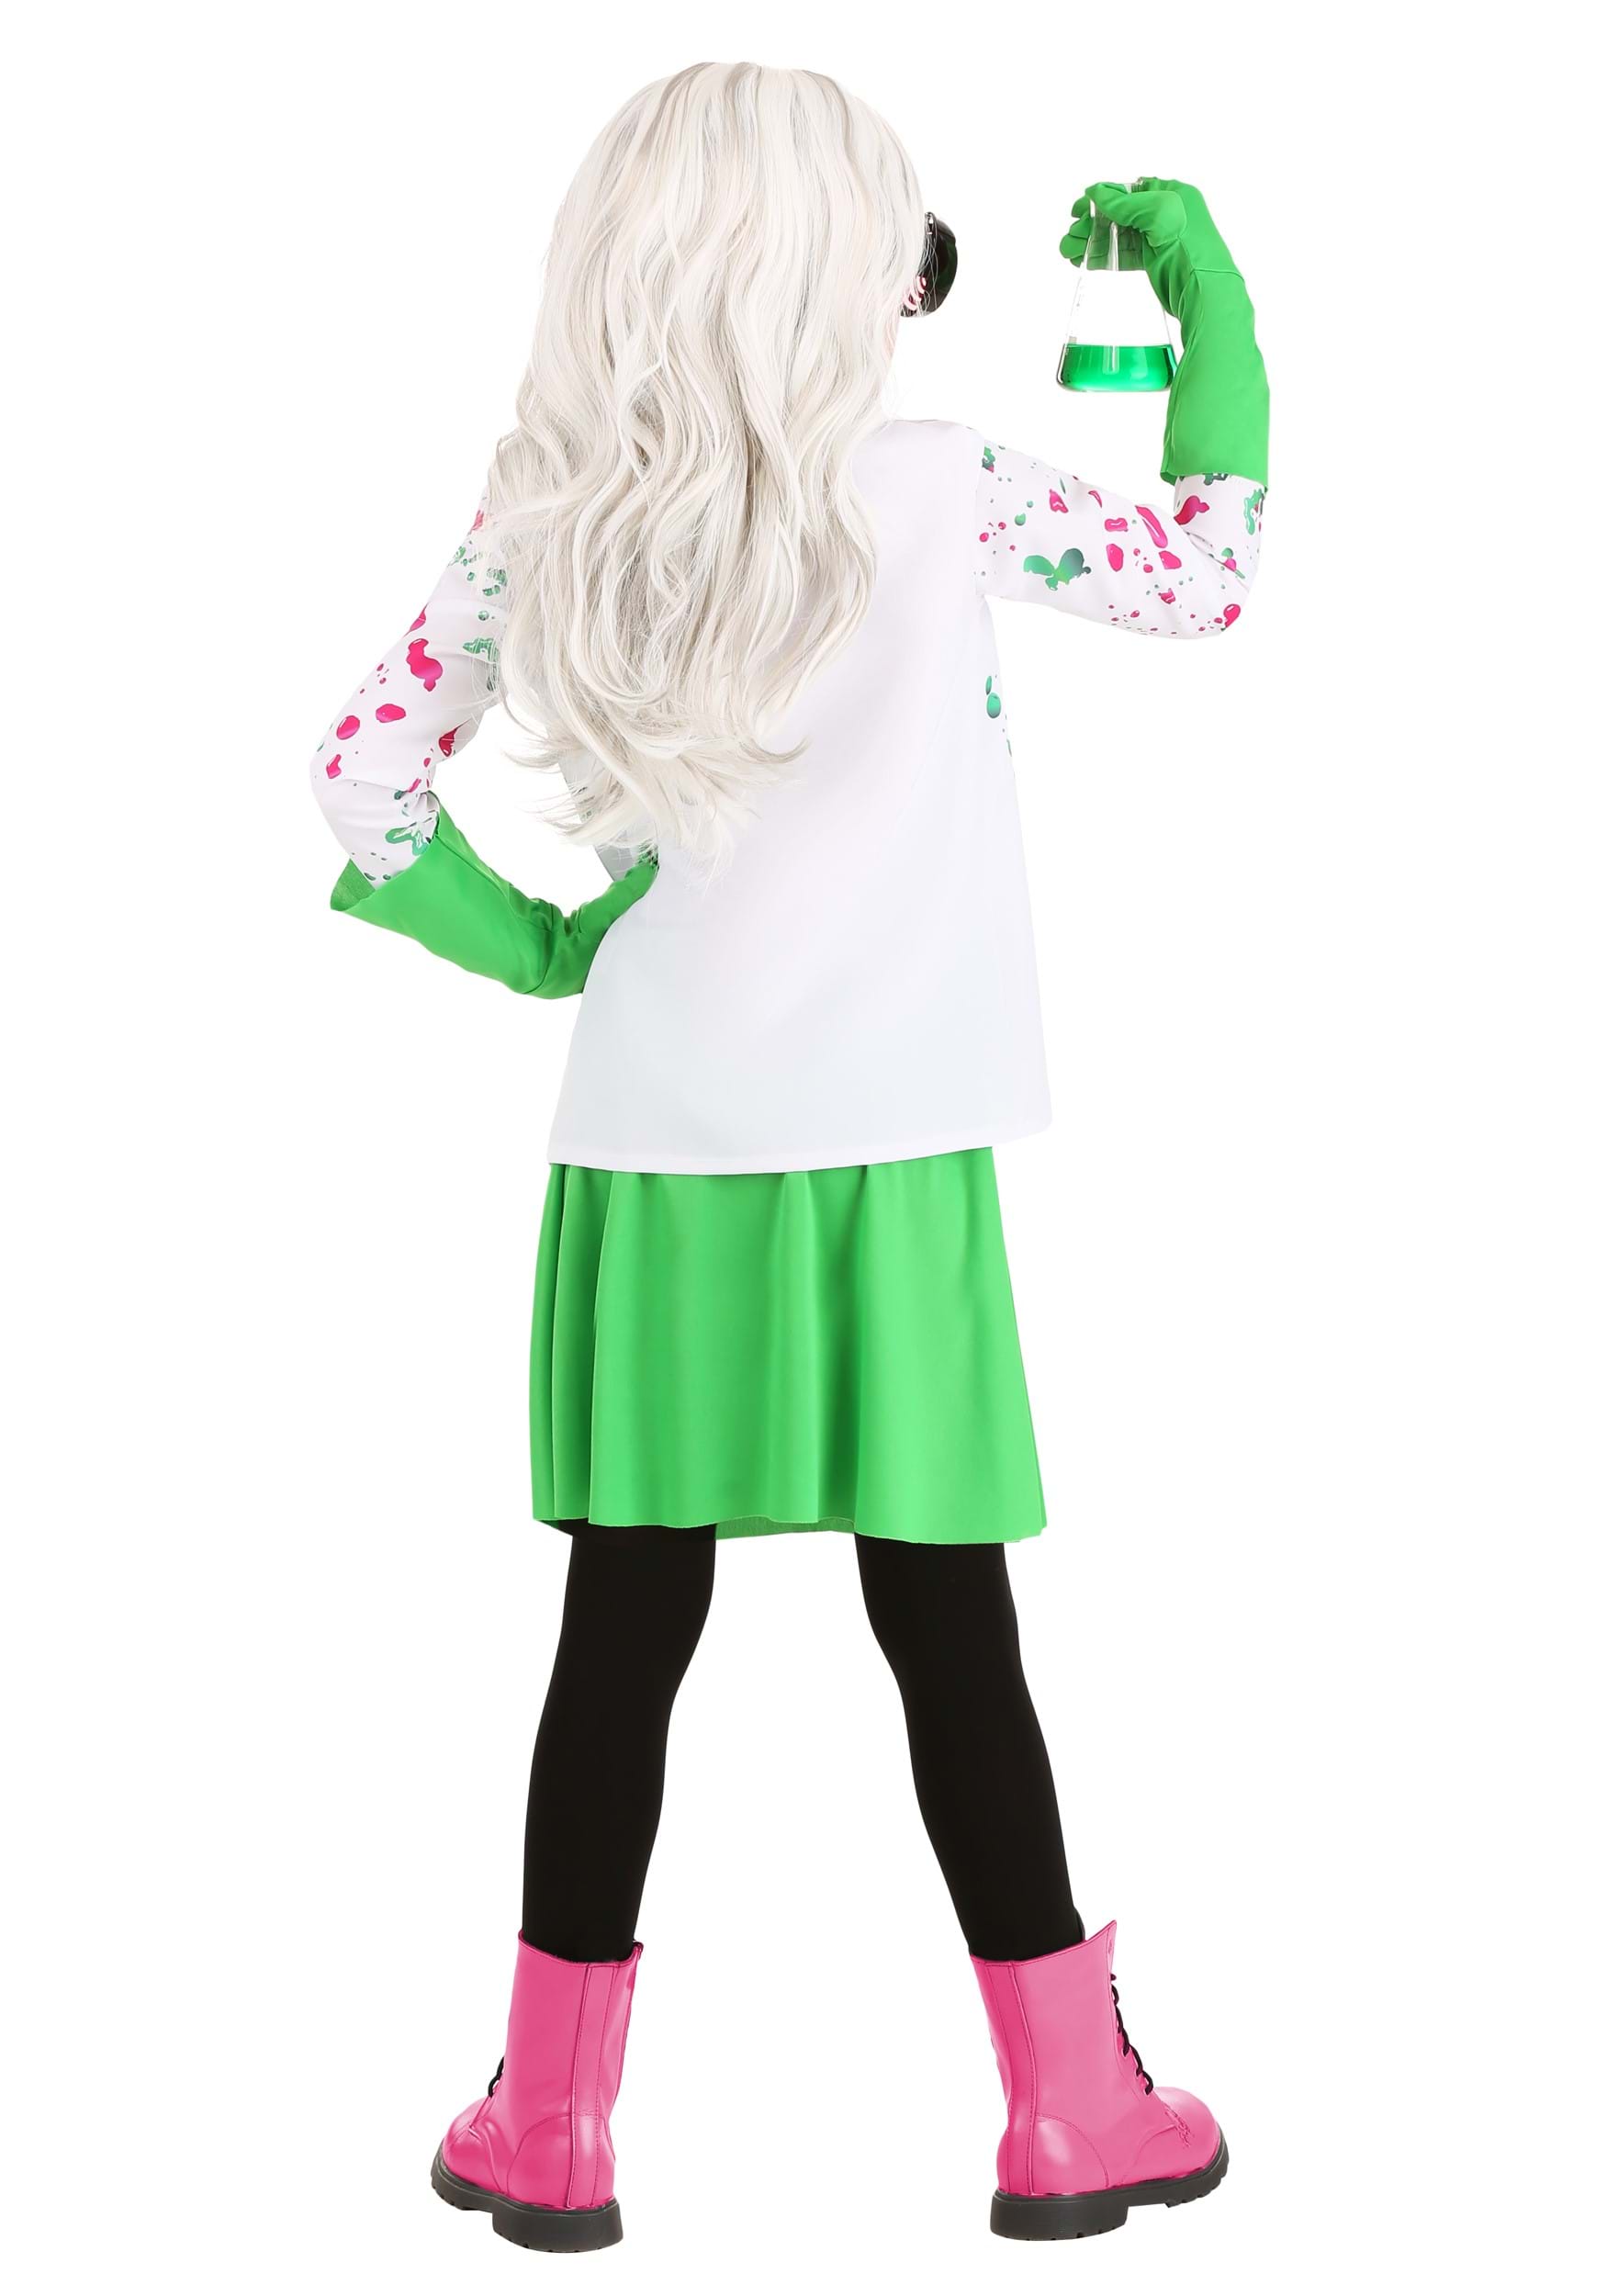 Kid's Mad Scientist Costume